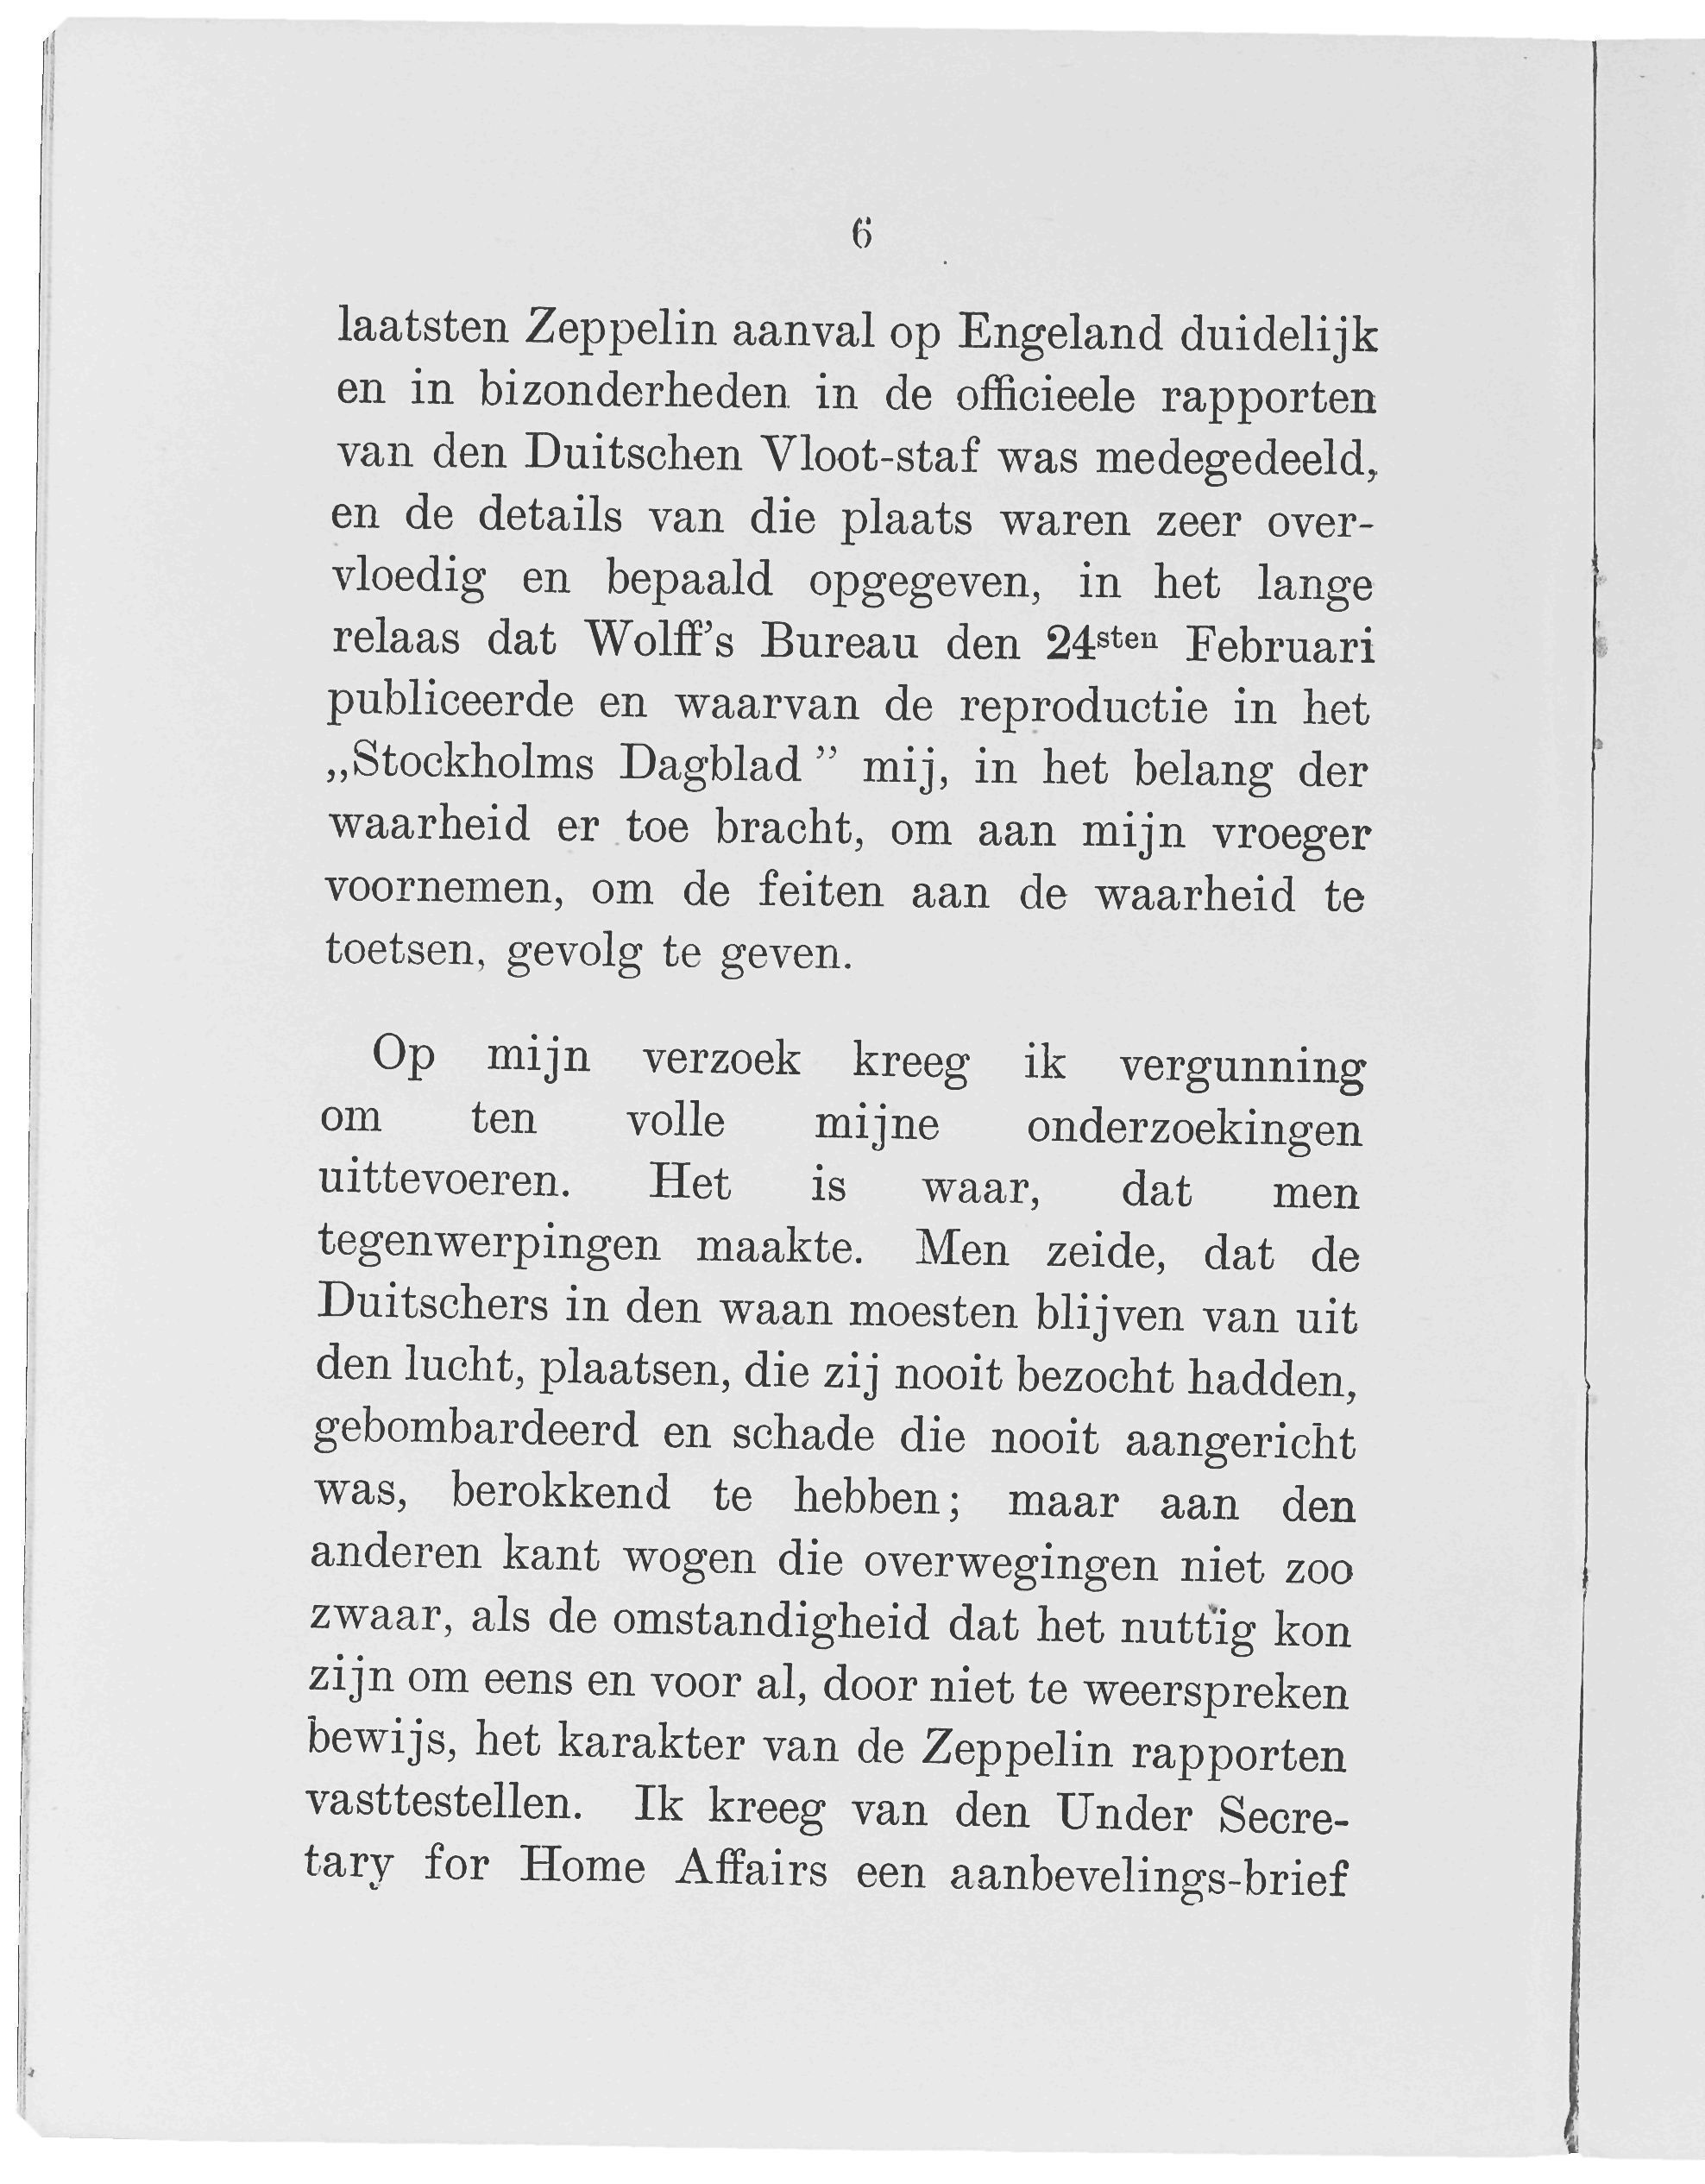 6 laatsten Zeppelin aanval op Engeland duidelijk en in bizonderheden in de officieele rapporten van den Duitschen Vloot-staf was medegedeeld, en de details van die plaats waren zeer overvloedig en